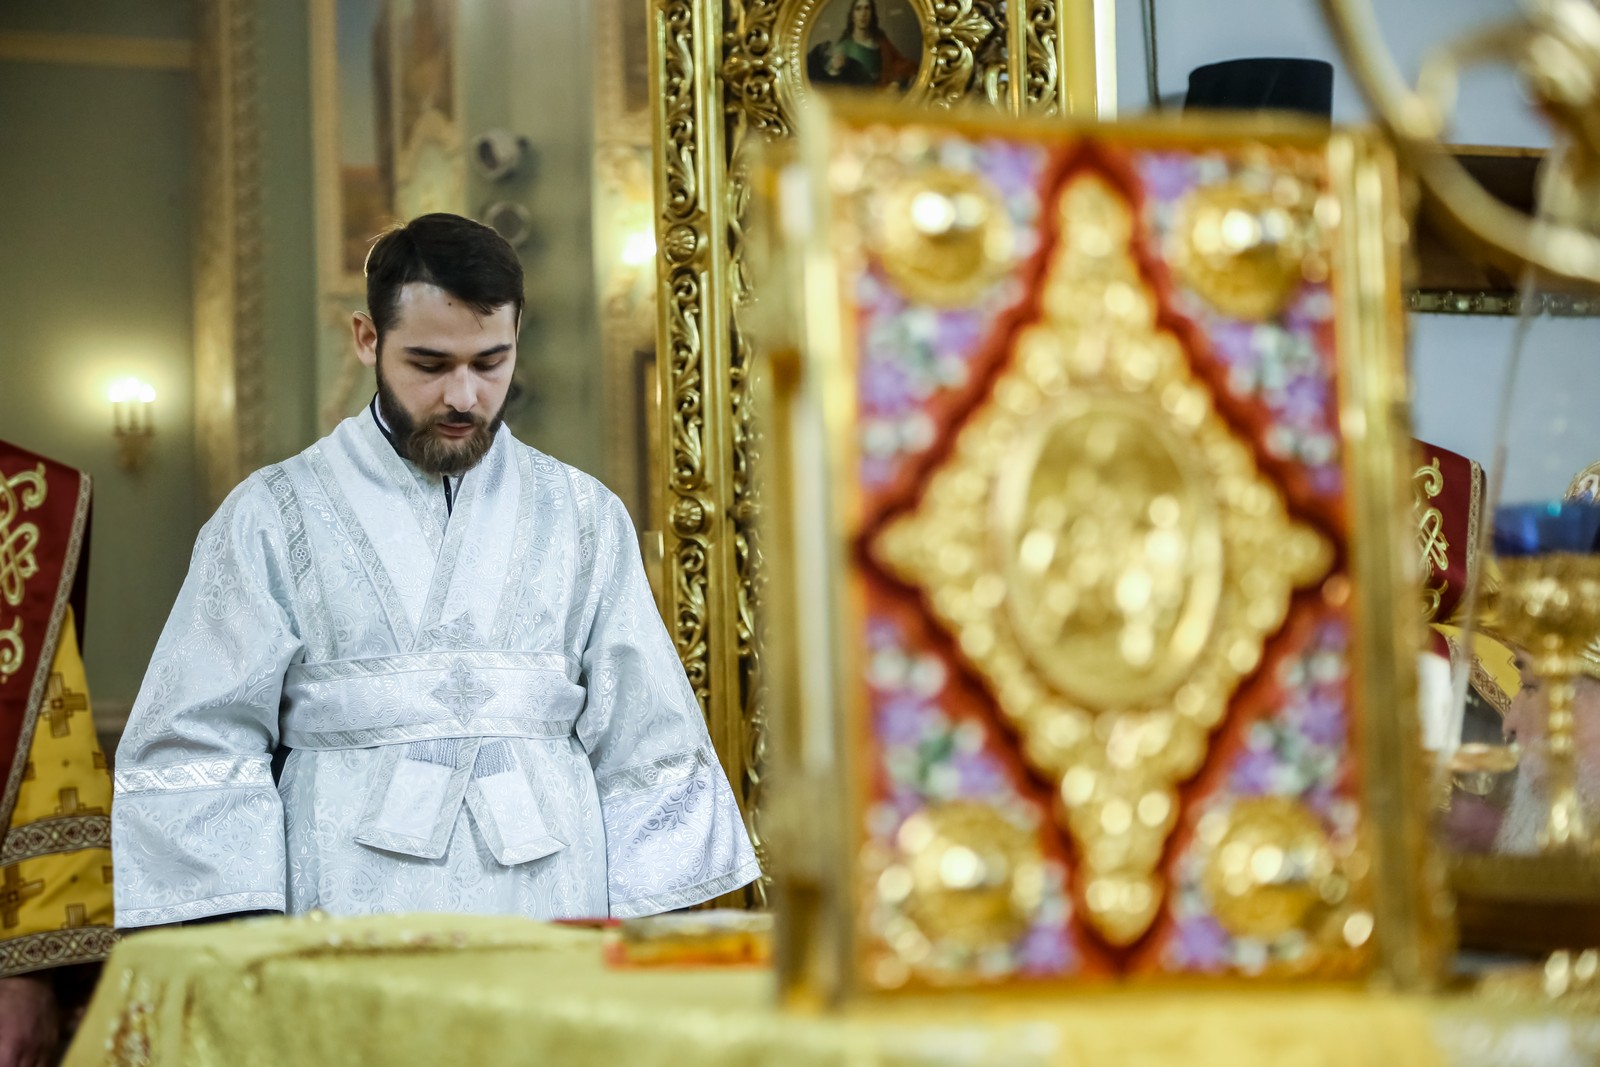 Митрополит Кирилл рукоположил студента семинарии в сан диакона